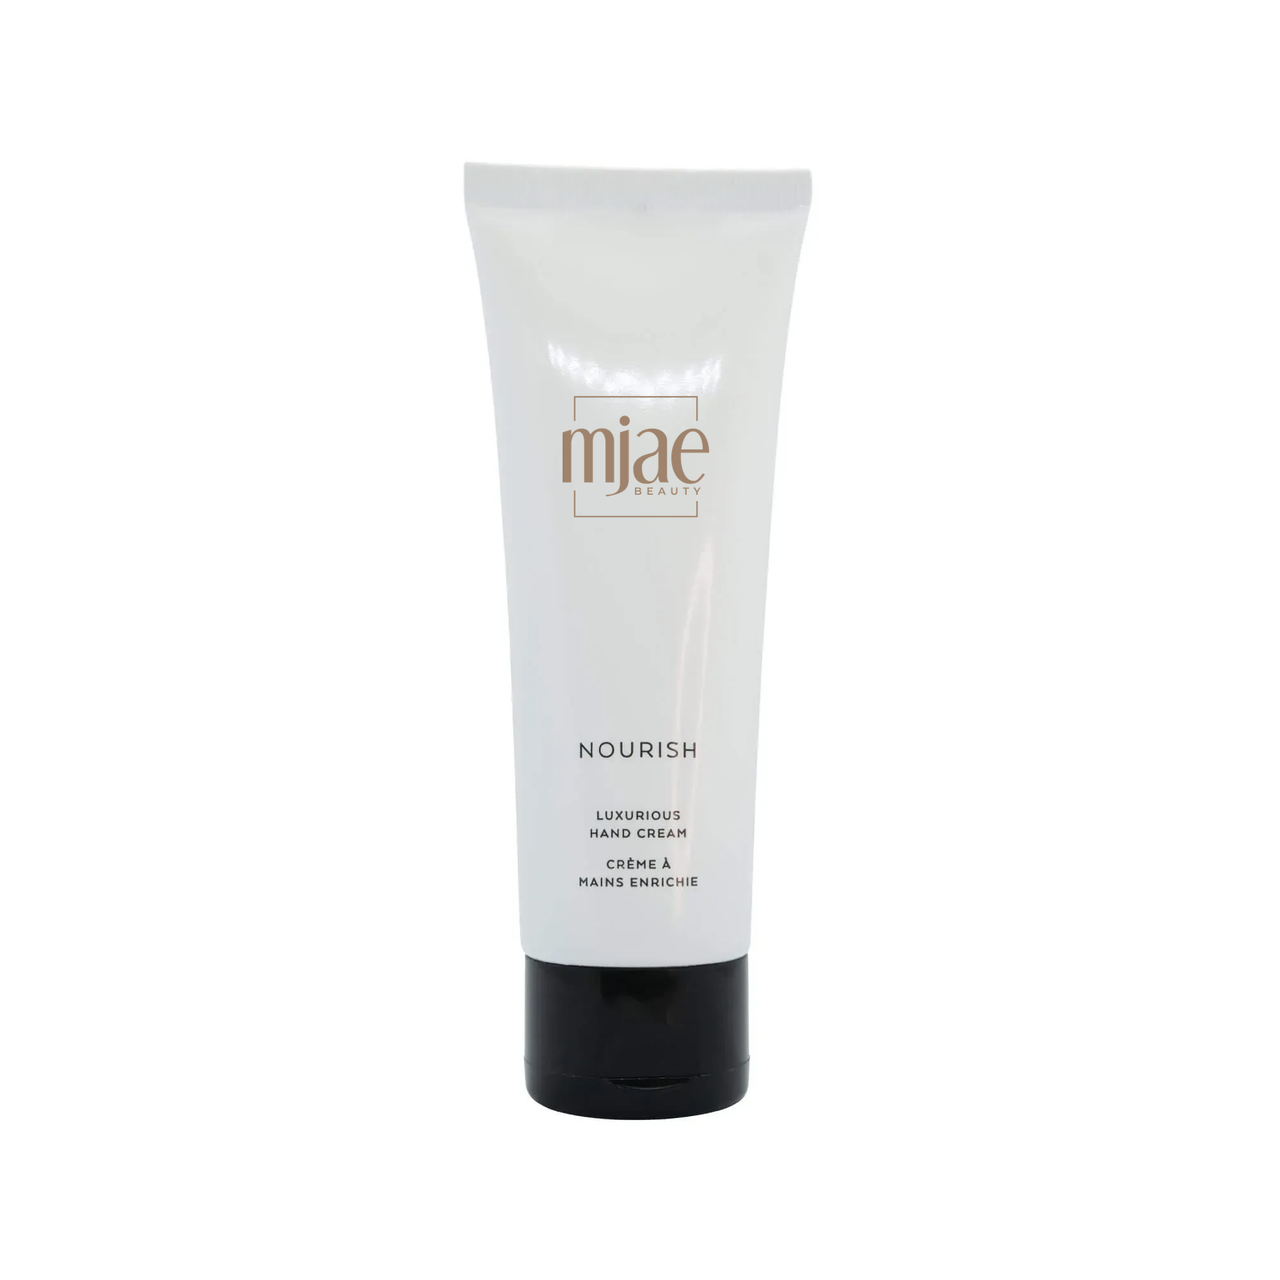 Mjae Nourish Hand Cream - Clean Beauty